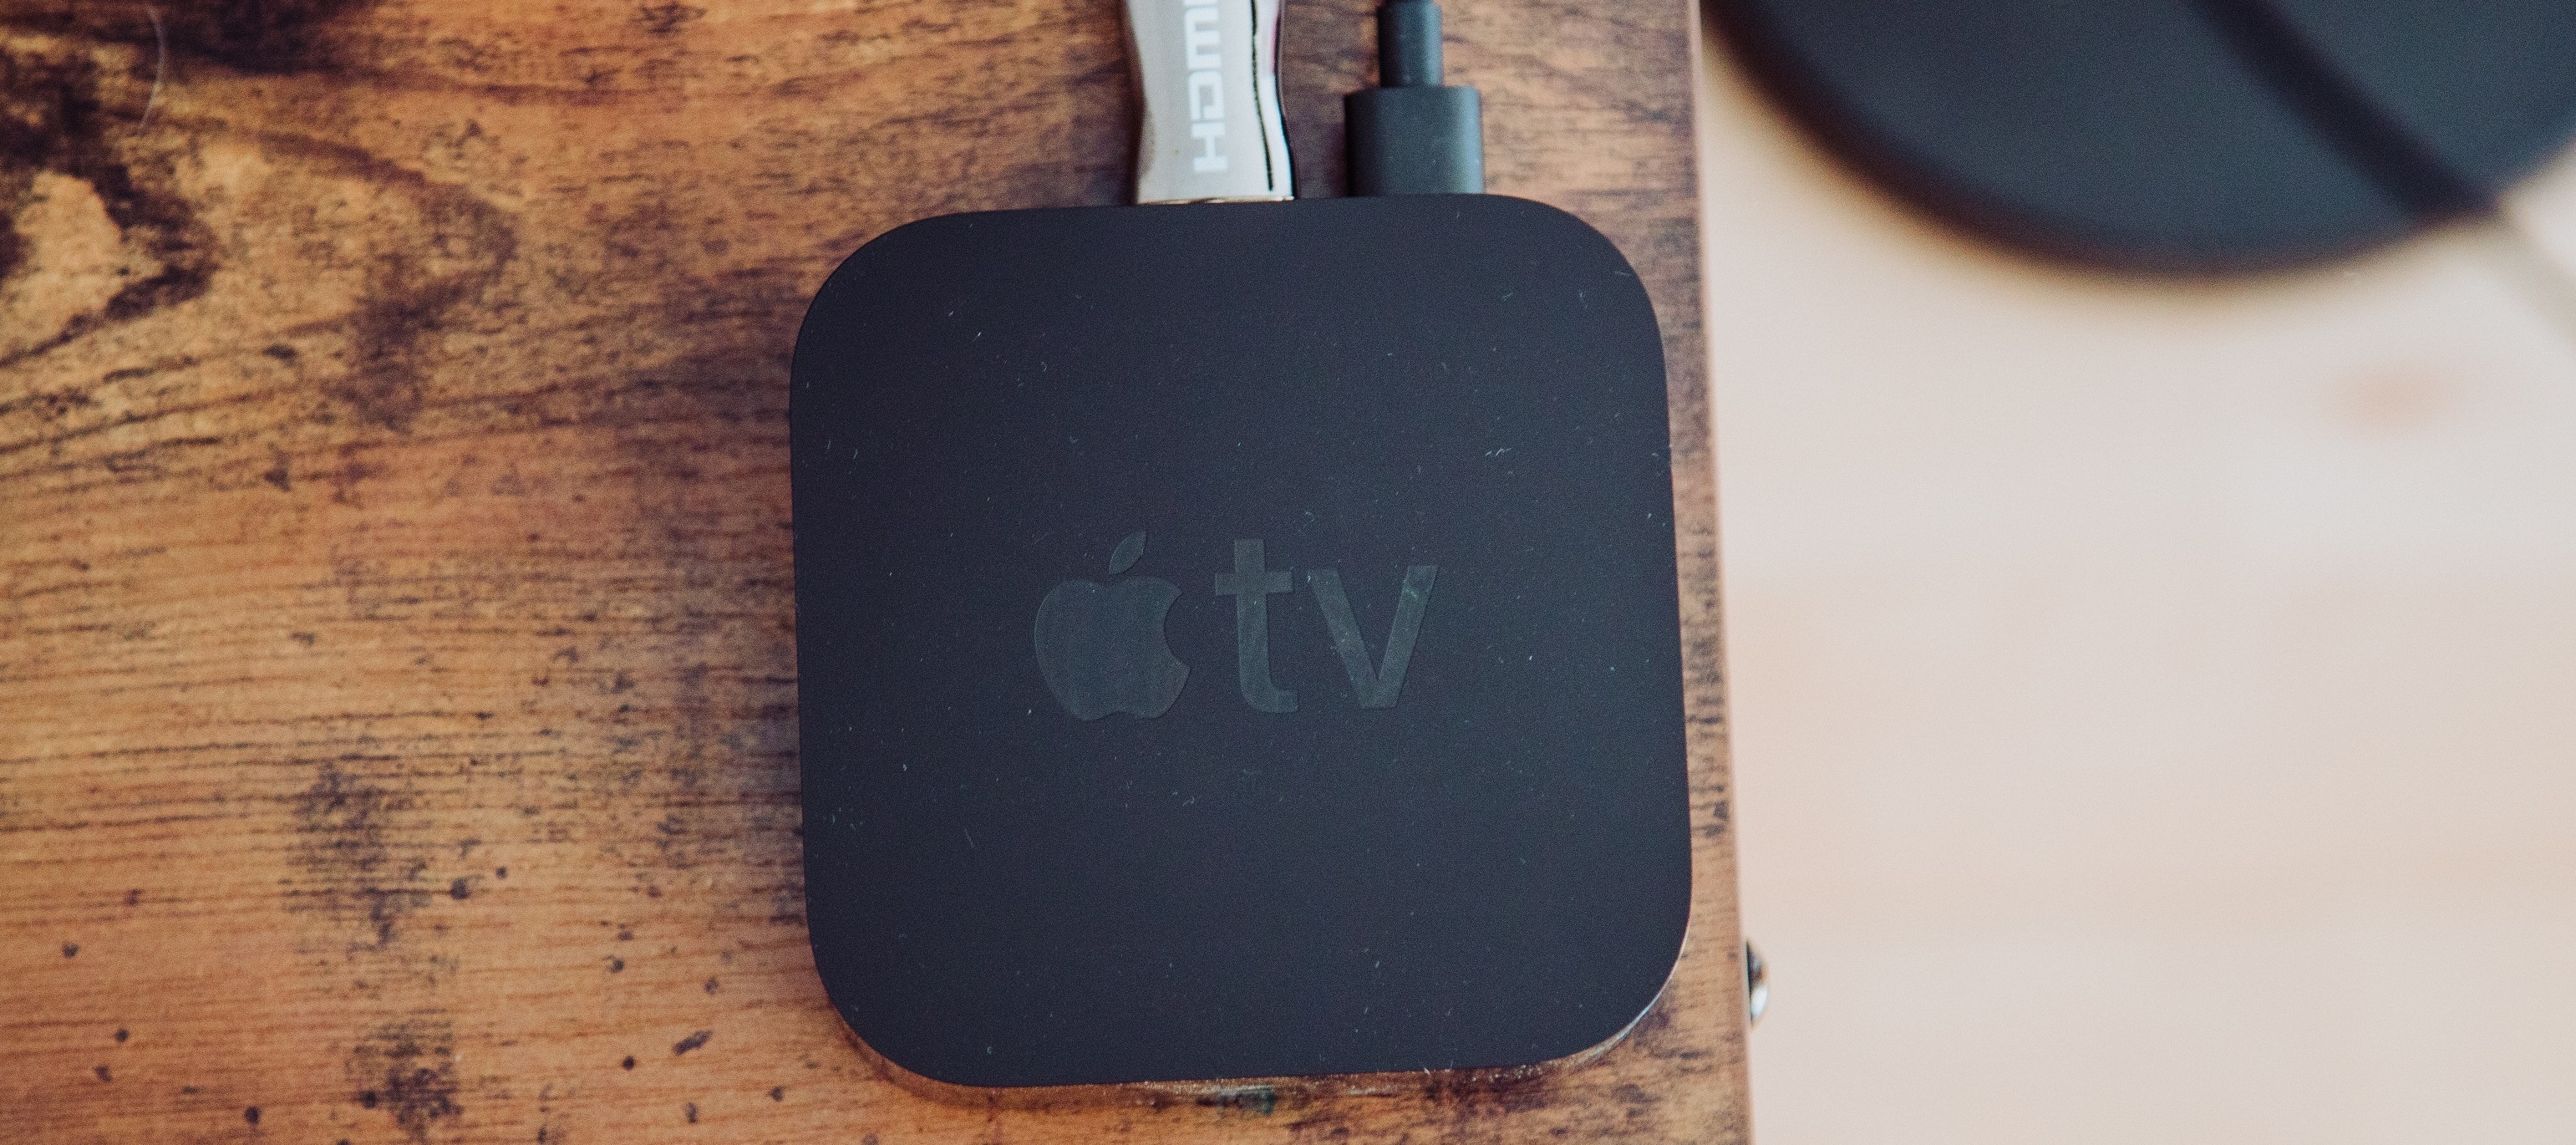 Das Apple TV Bundle zum Testen inkl. iPhone 11